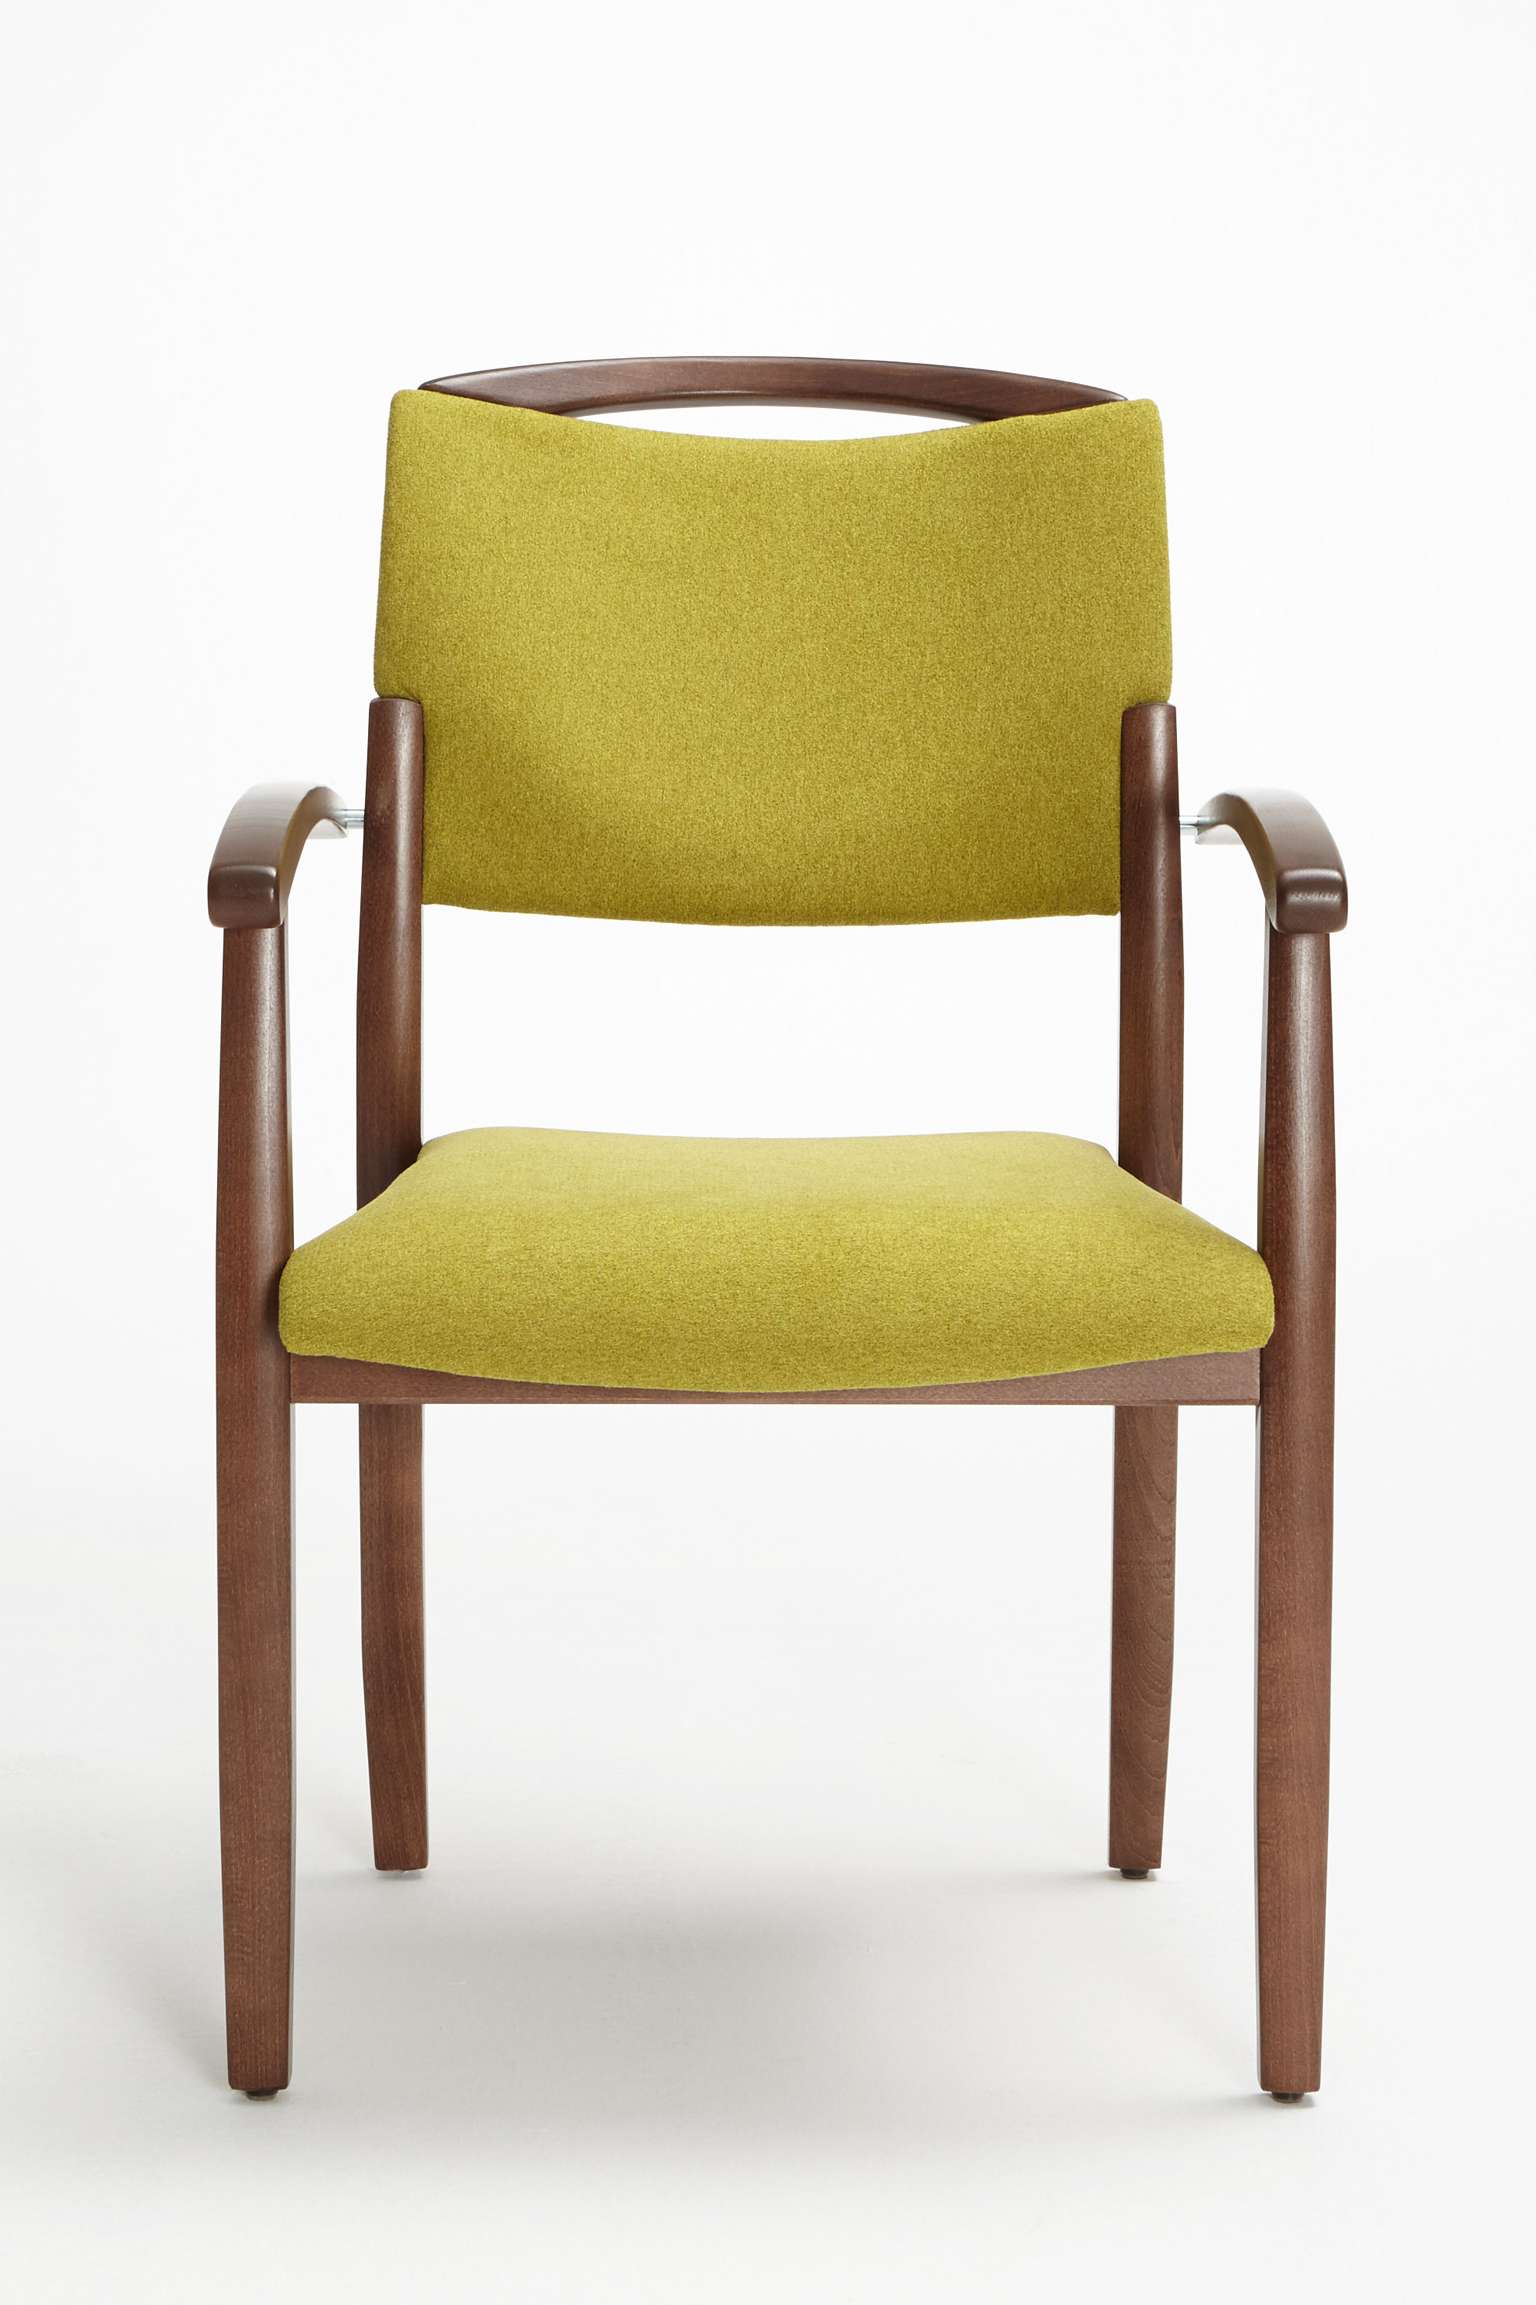 Model Fena als stapelbare stoel met armleuningen en handgreep